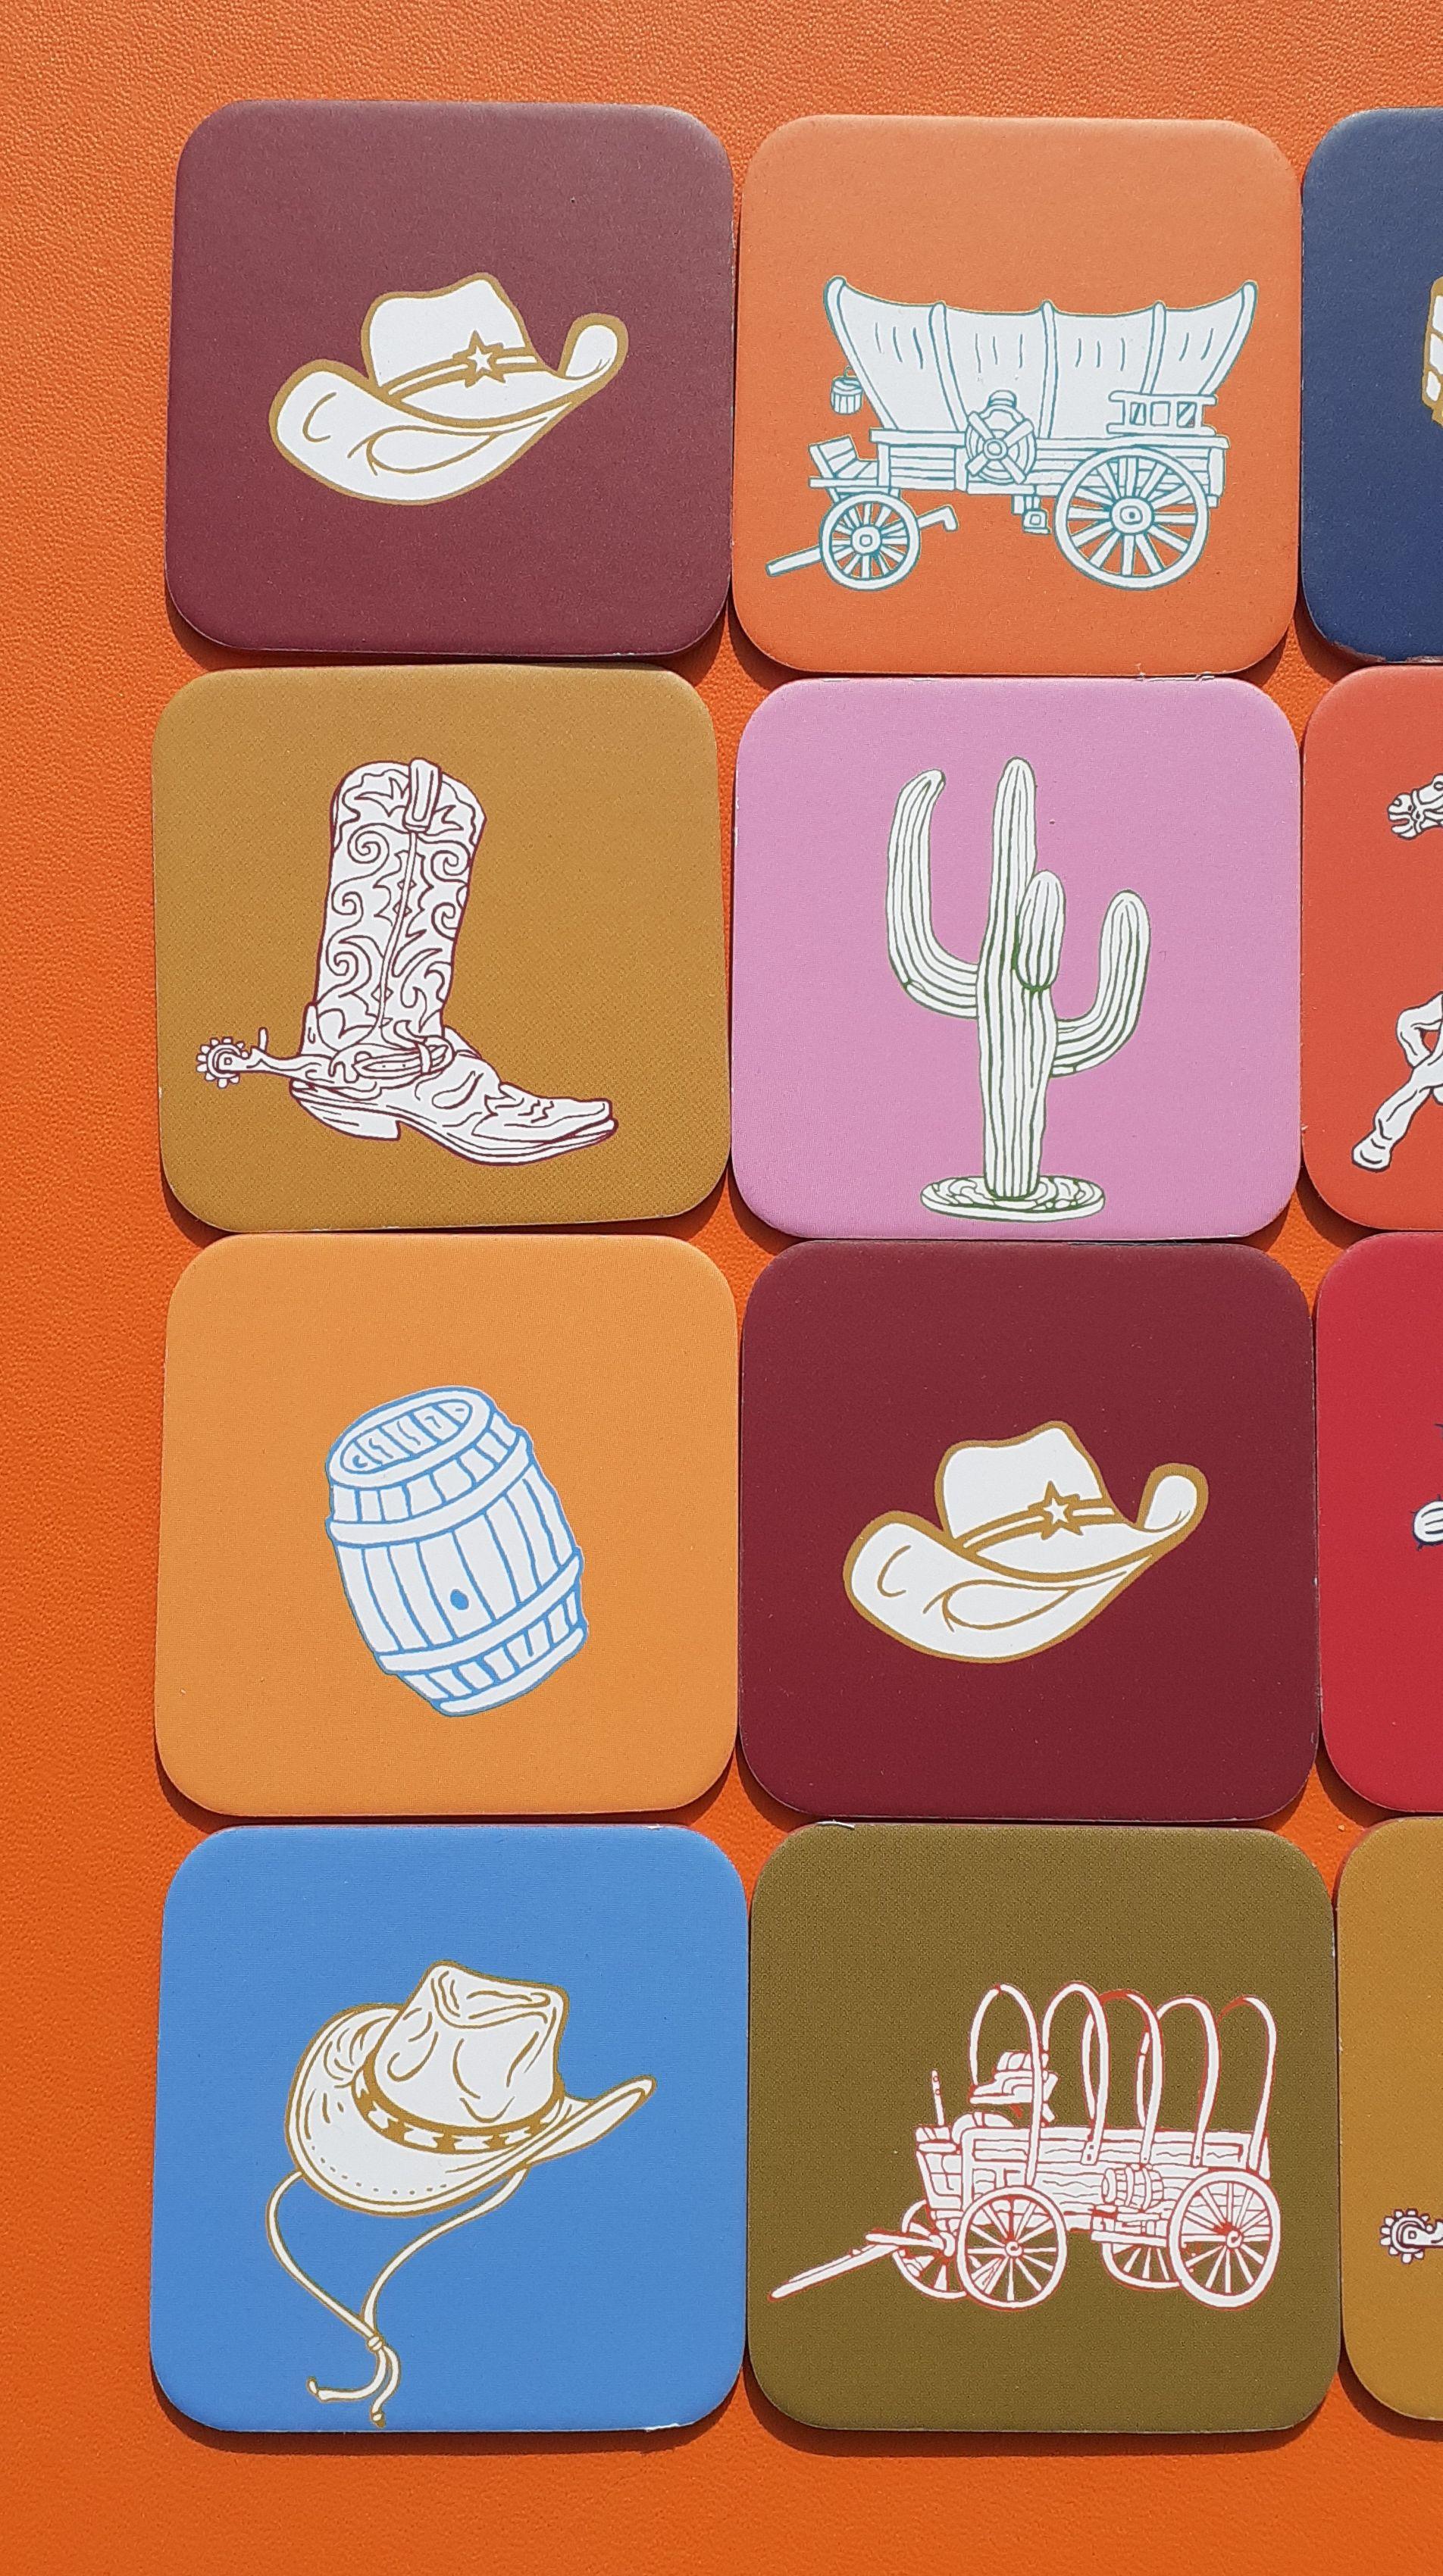 Schönes Authentic Hermès Memory Spiel

Drucken: Texanischer Geist, Thema Reiten, Western, Rodeo

Enthält 12 Kartenpaare, also insgesamt 24 Karten

Die gleiche Zeichnung befindet sich auf 2 Karten, das Ziel ist es, die Paare zu finden

Hergestellt